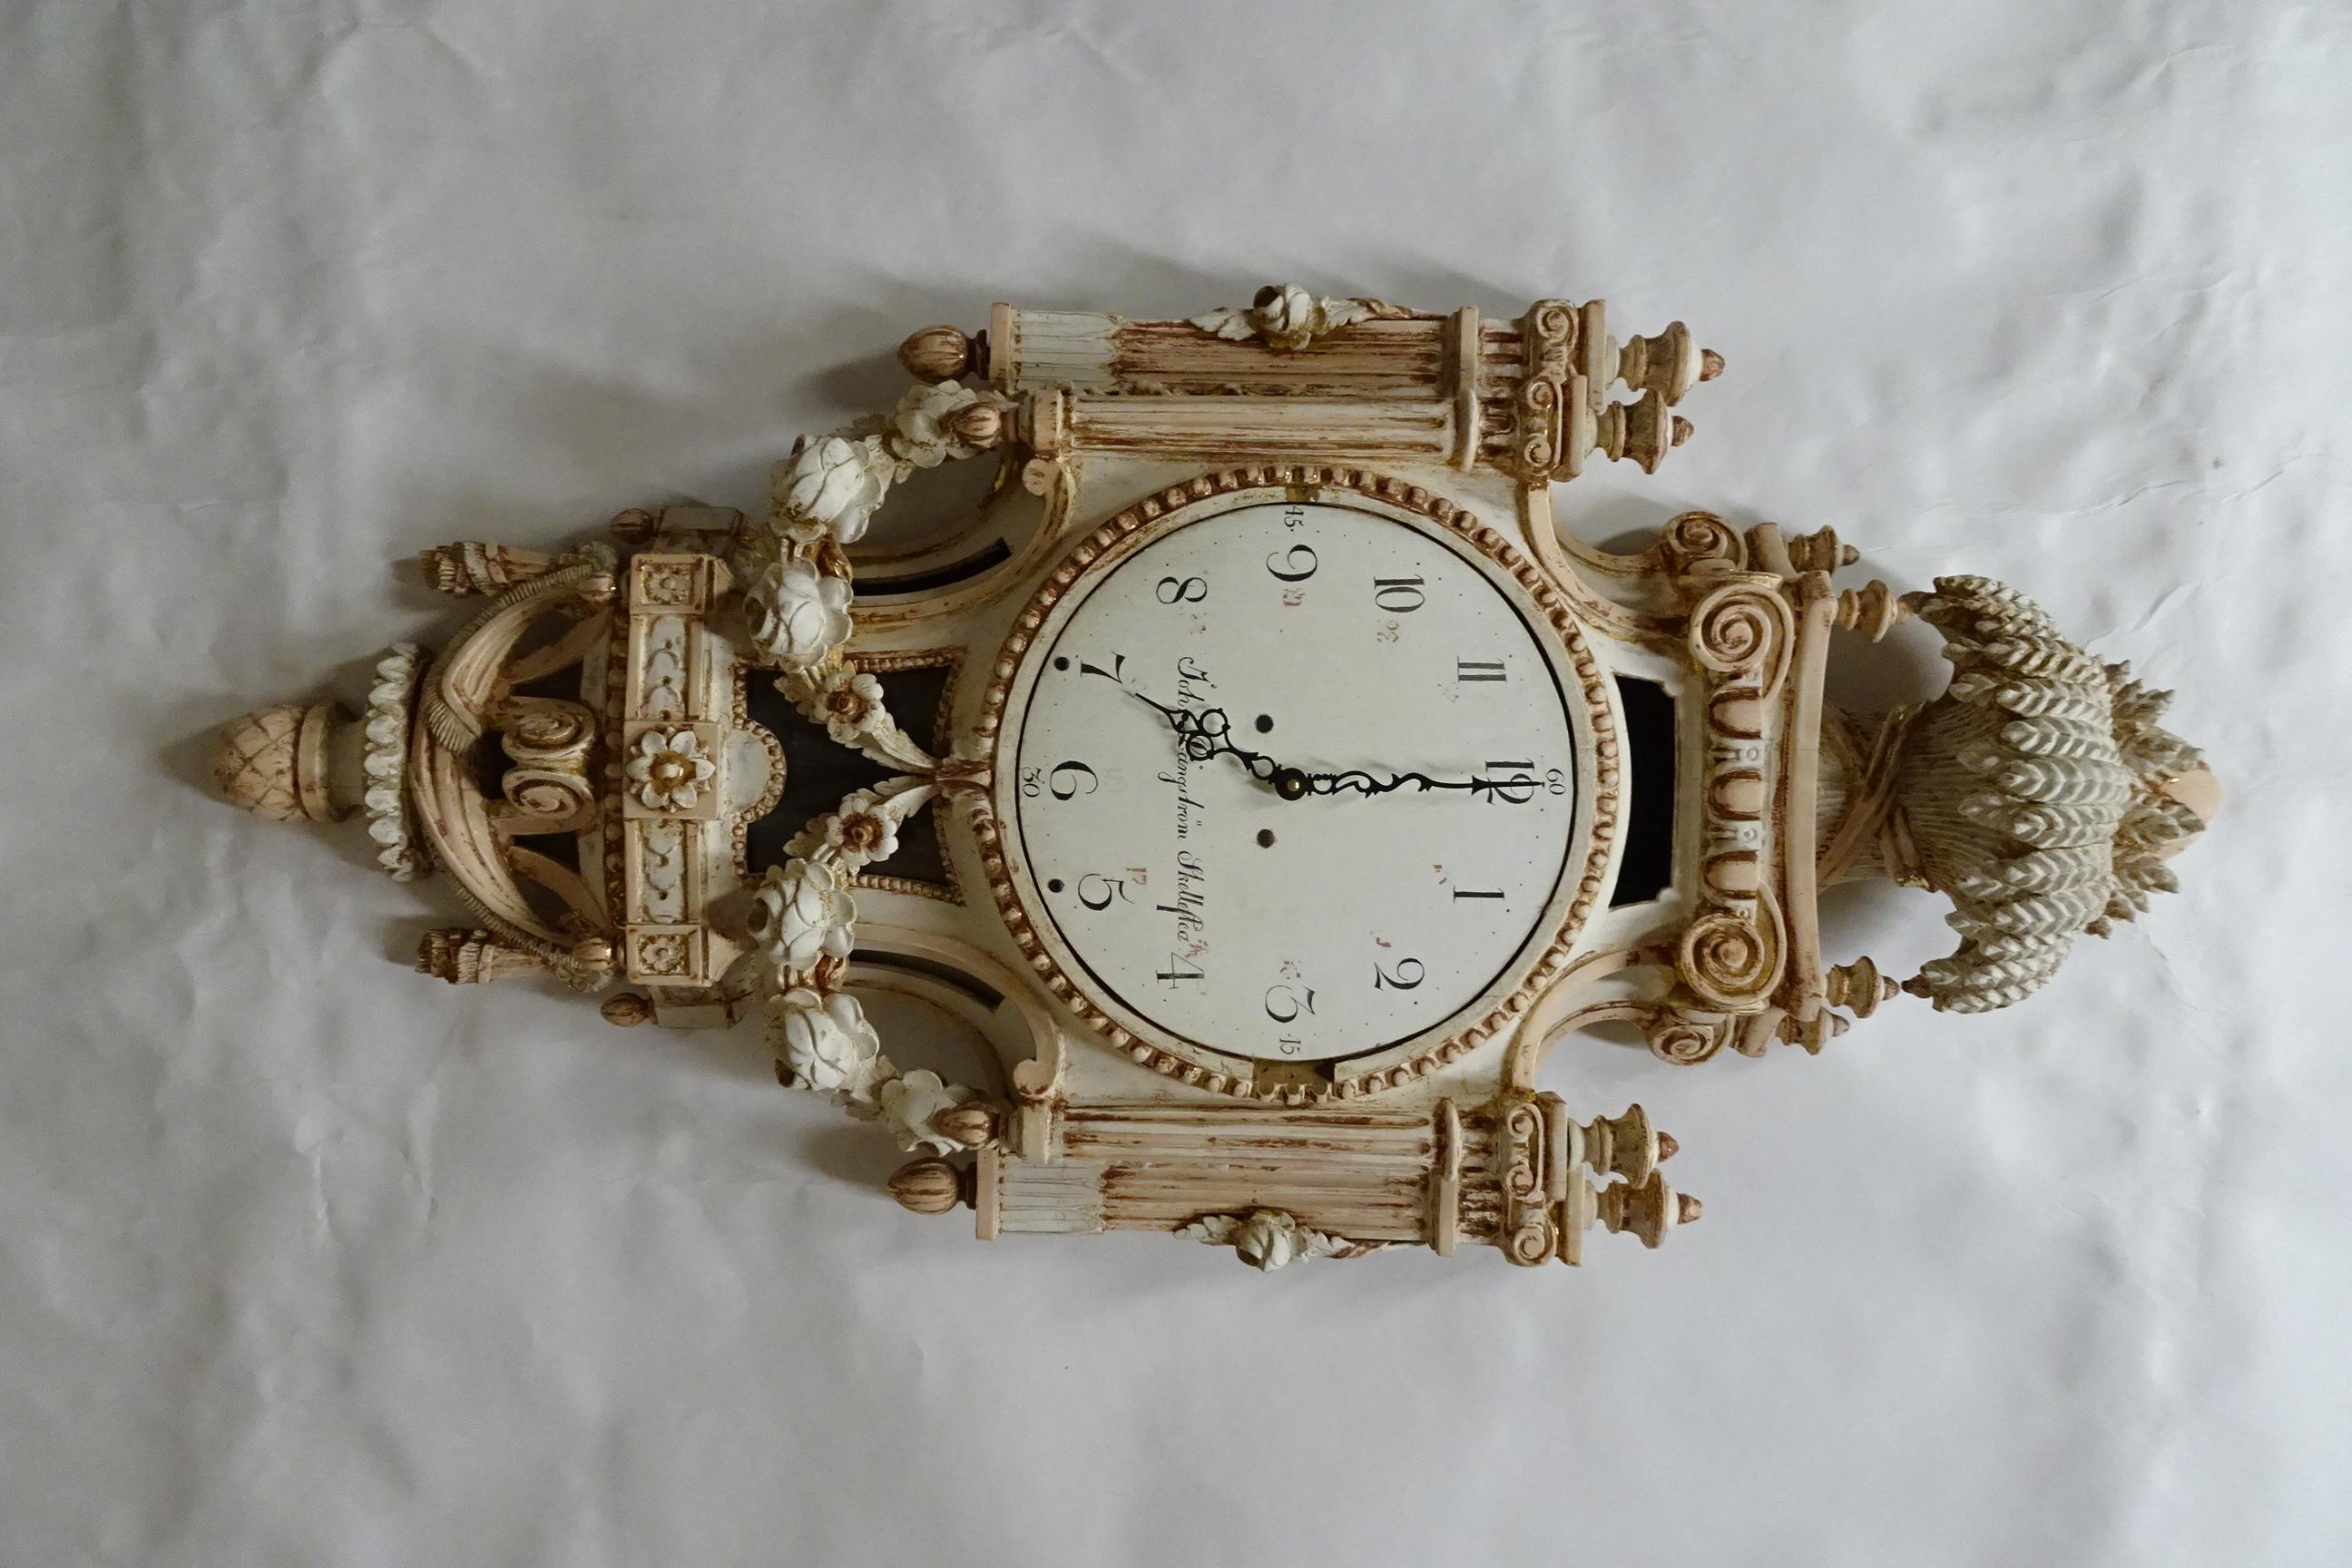 Il s'agit d'une horloge murale gustavienne suédoise unique et 100% originale.